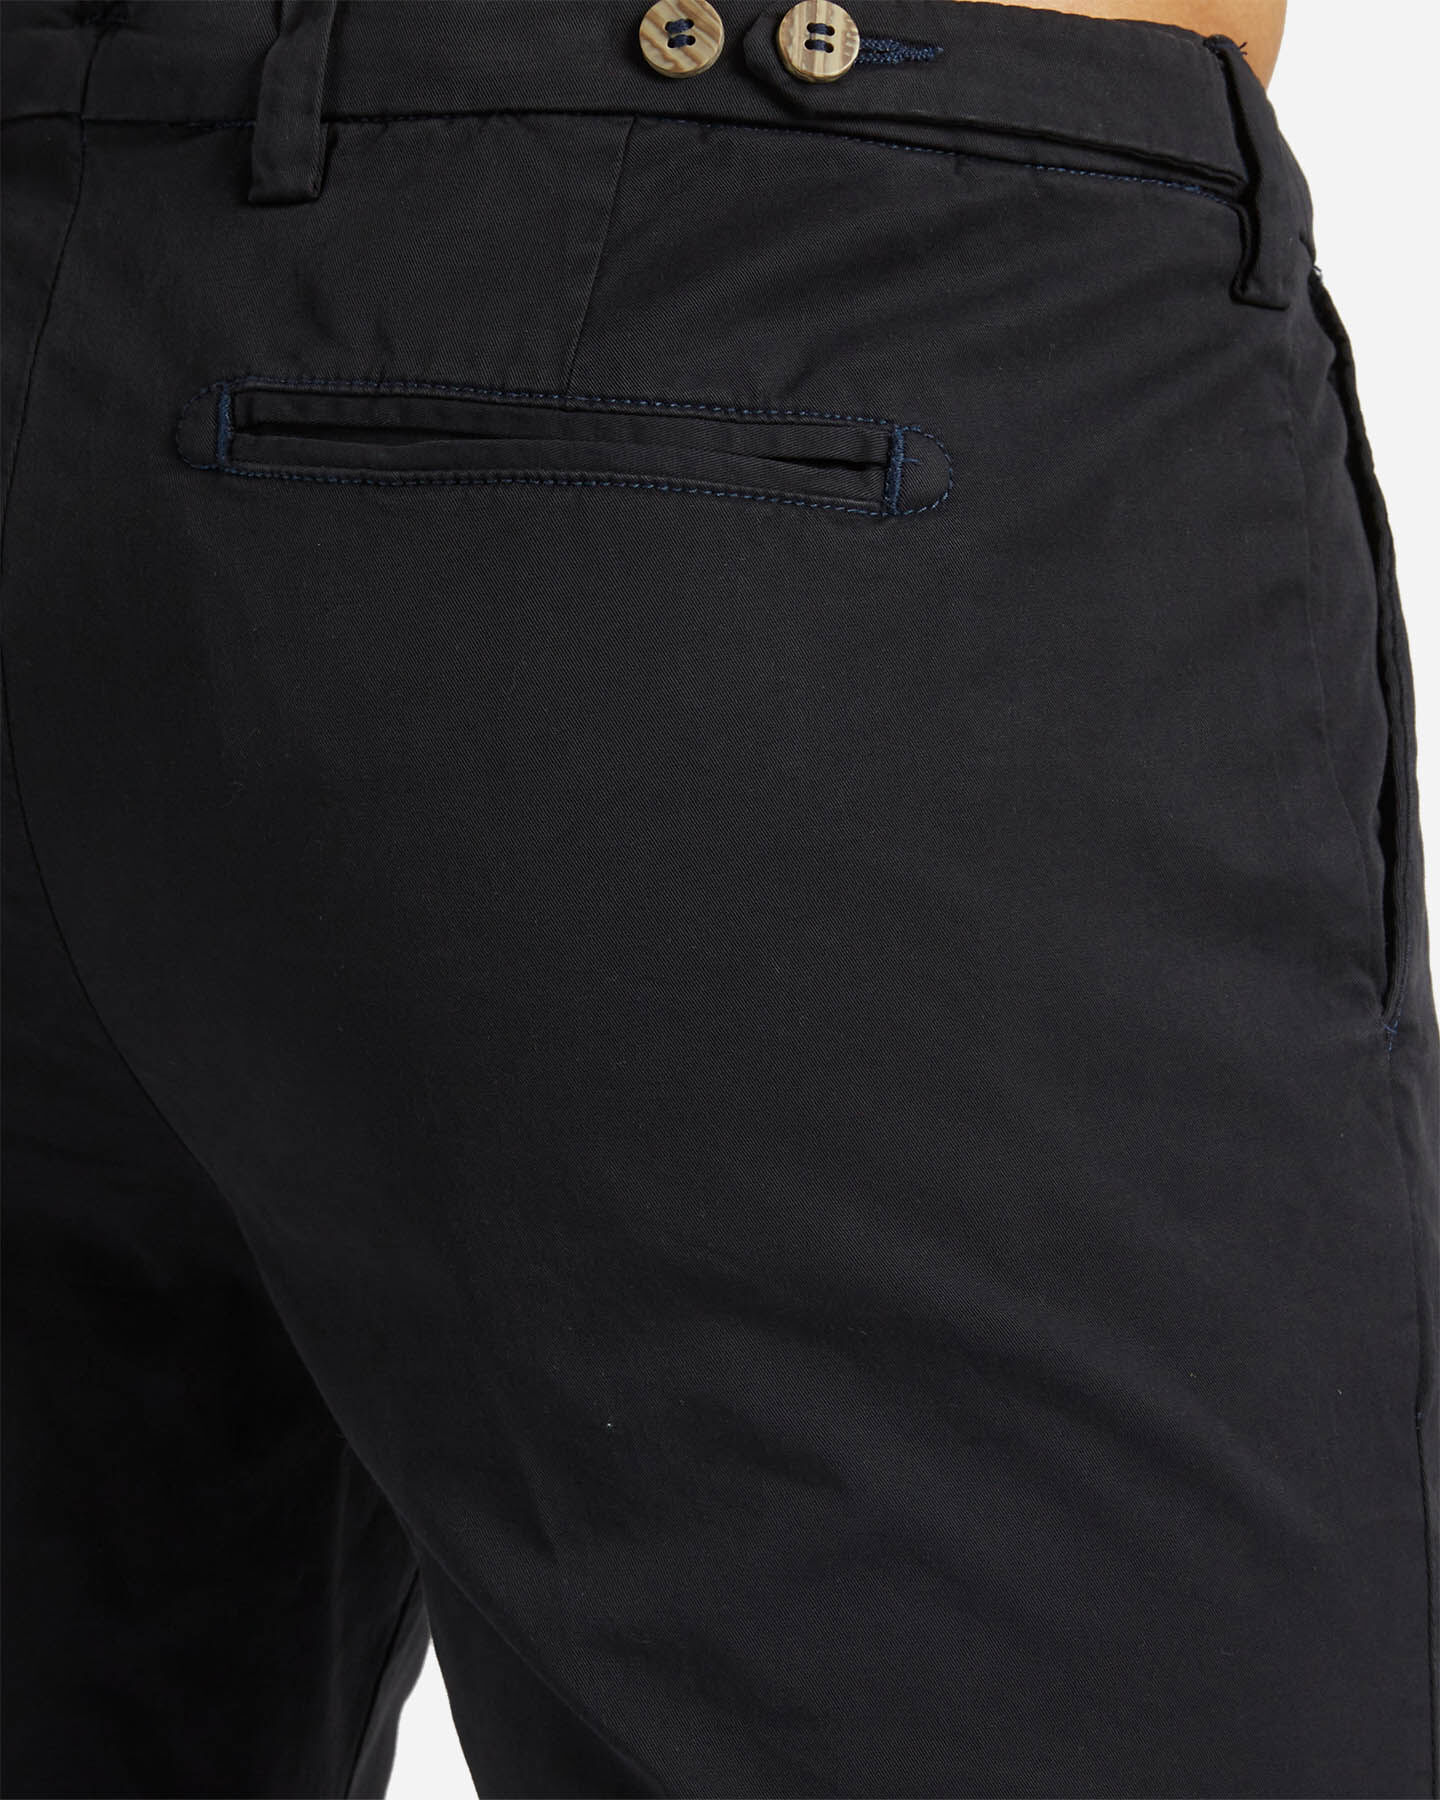  Pantalone BEST COMPANY MONTENAPOLEONE M S4122339|1020|46 scatto 3